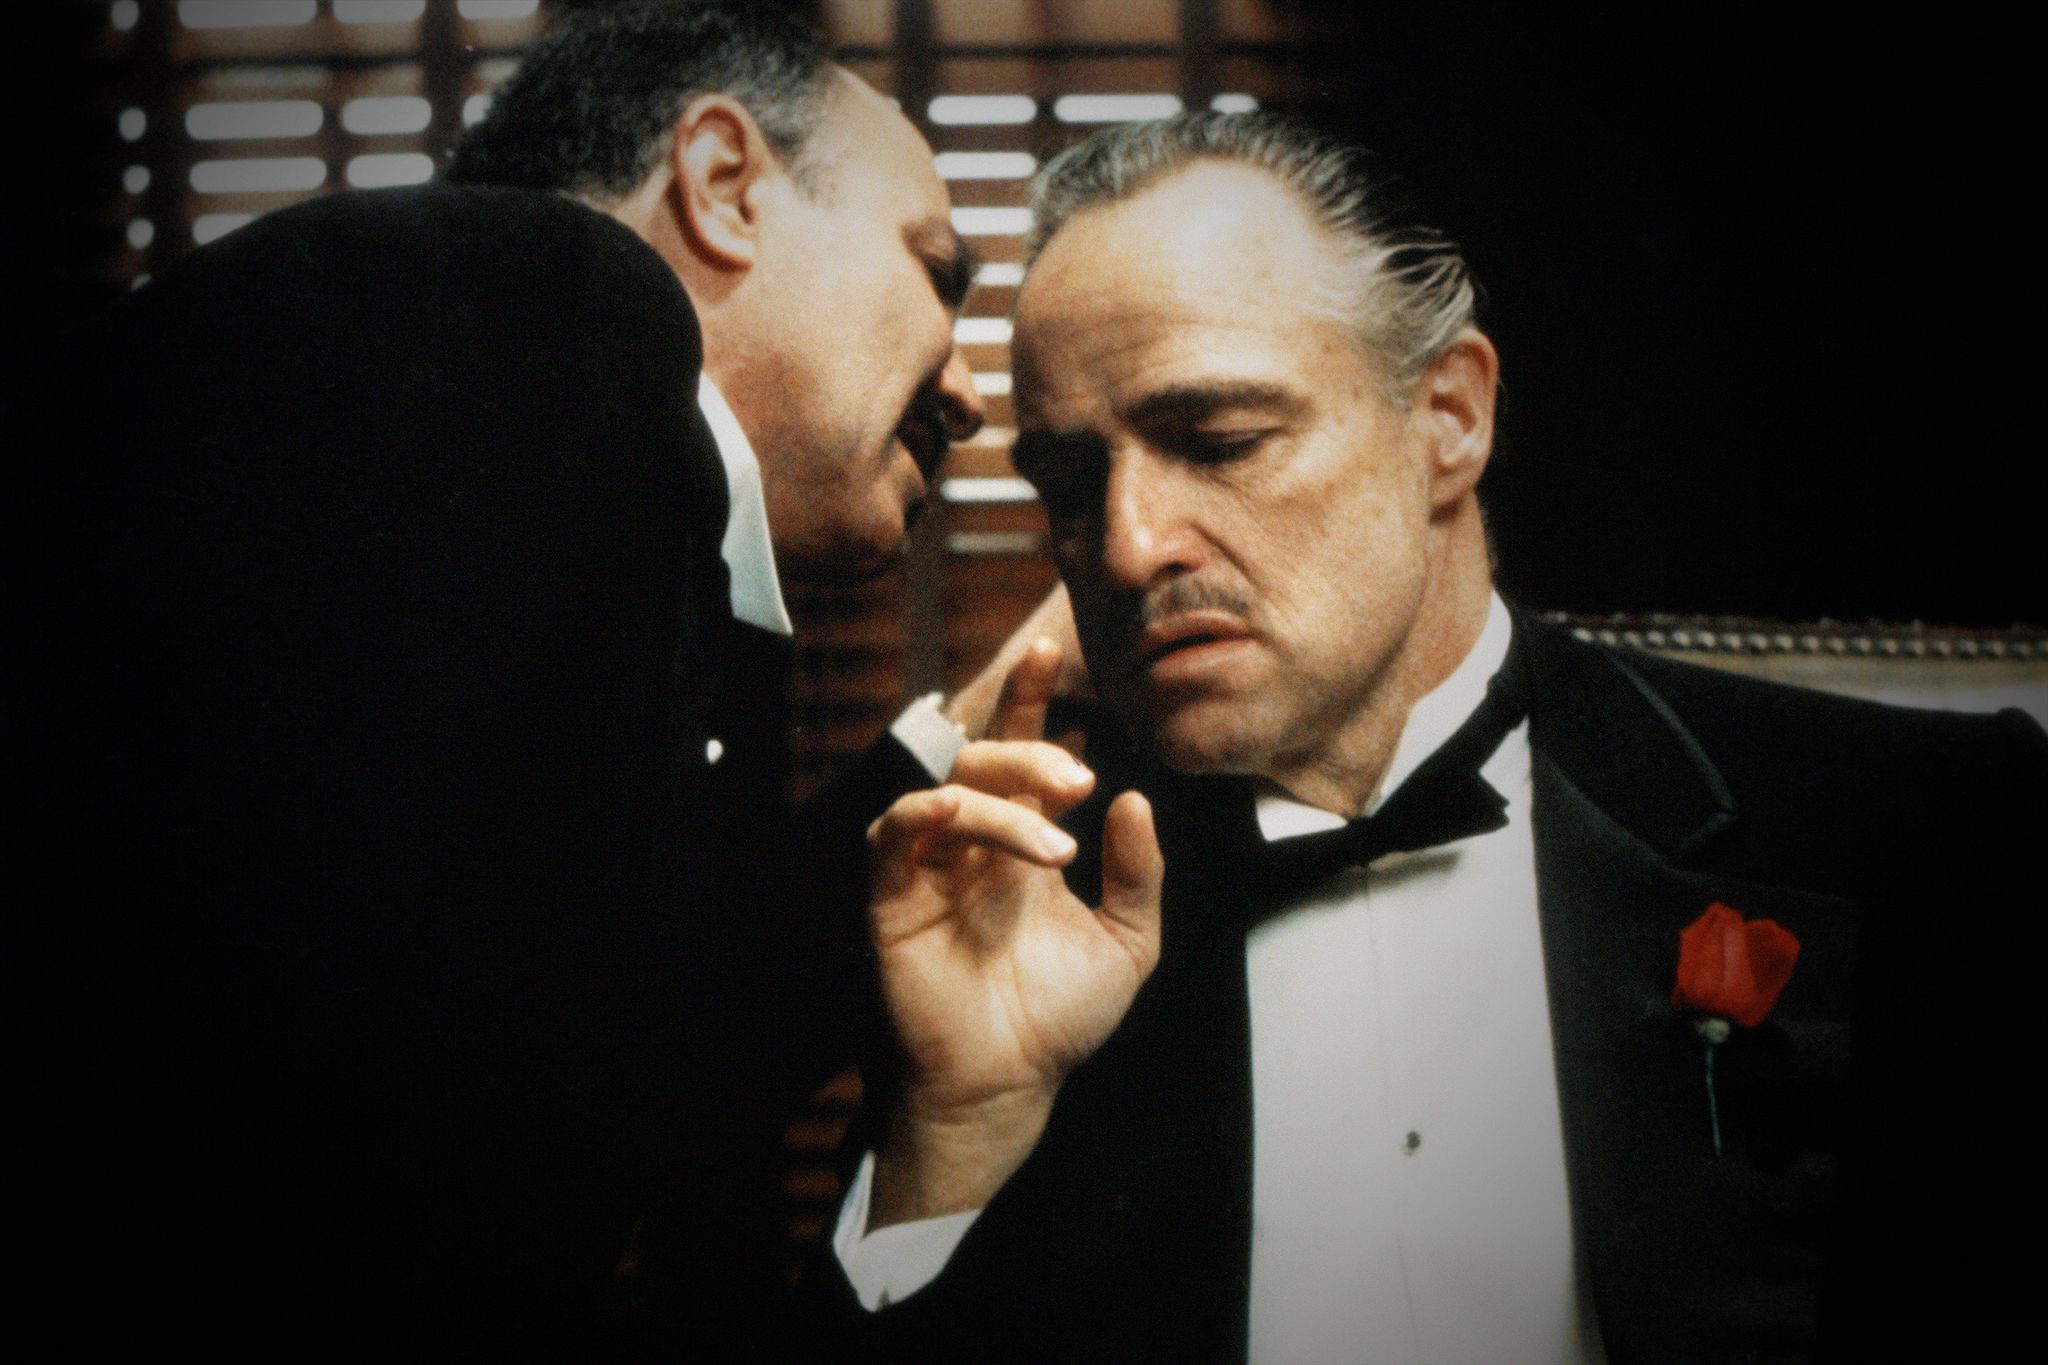 El padrino': la transformación de Marlon Brando en Vito Corleone